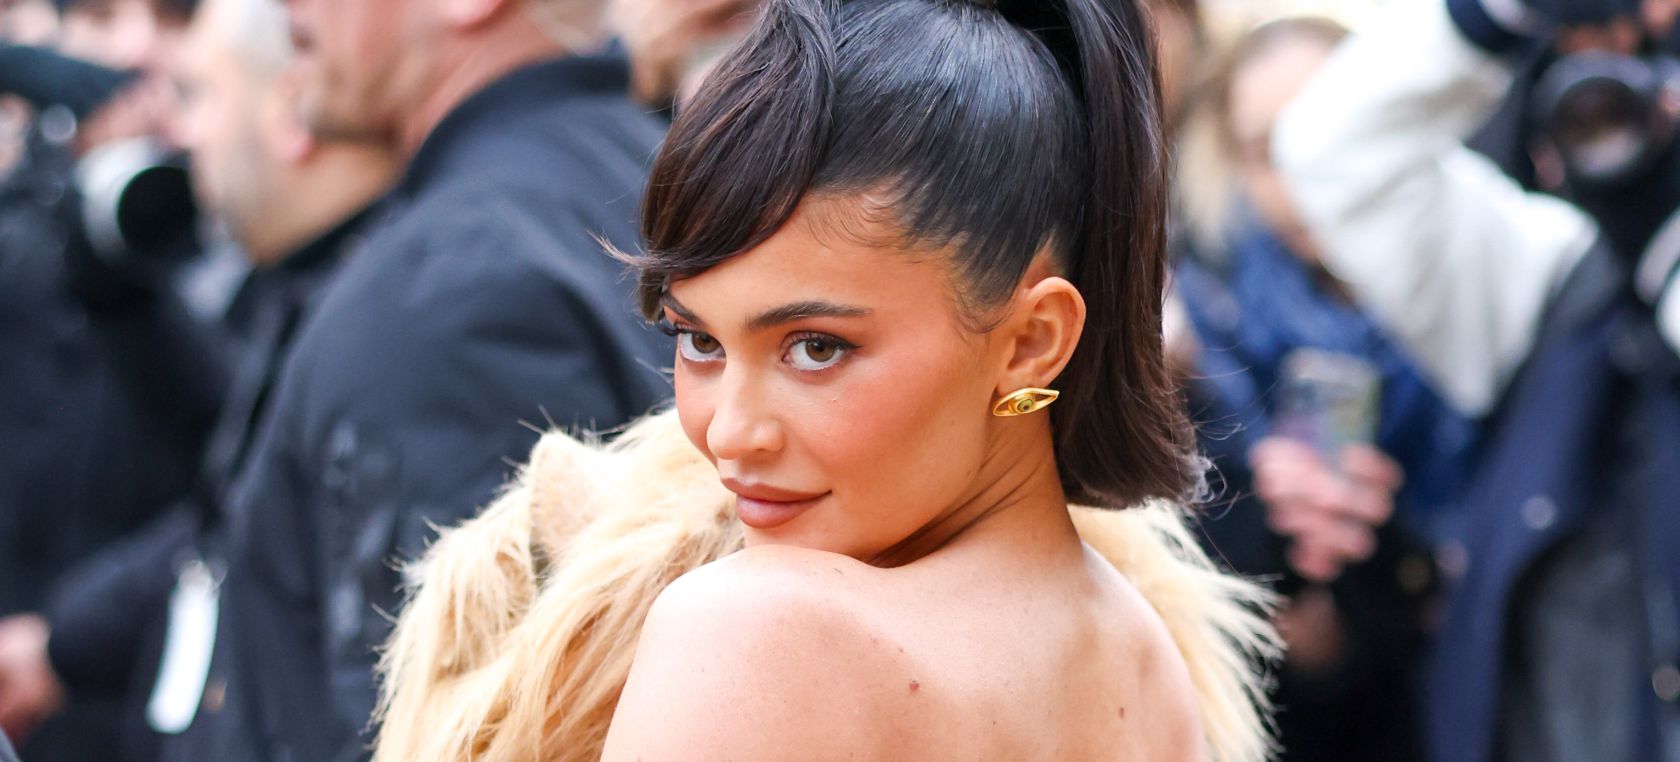 El último vestido de Kylie Jenner genera debate: “Aunque sea fake, es demasiado cruel”